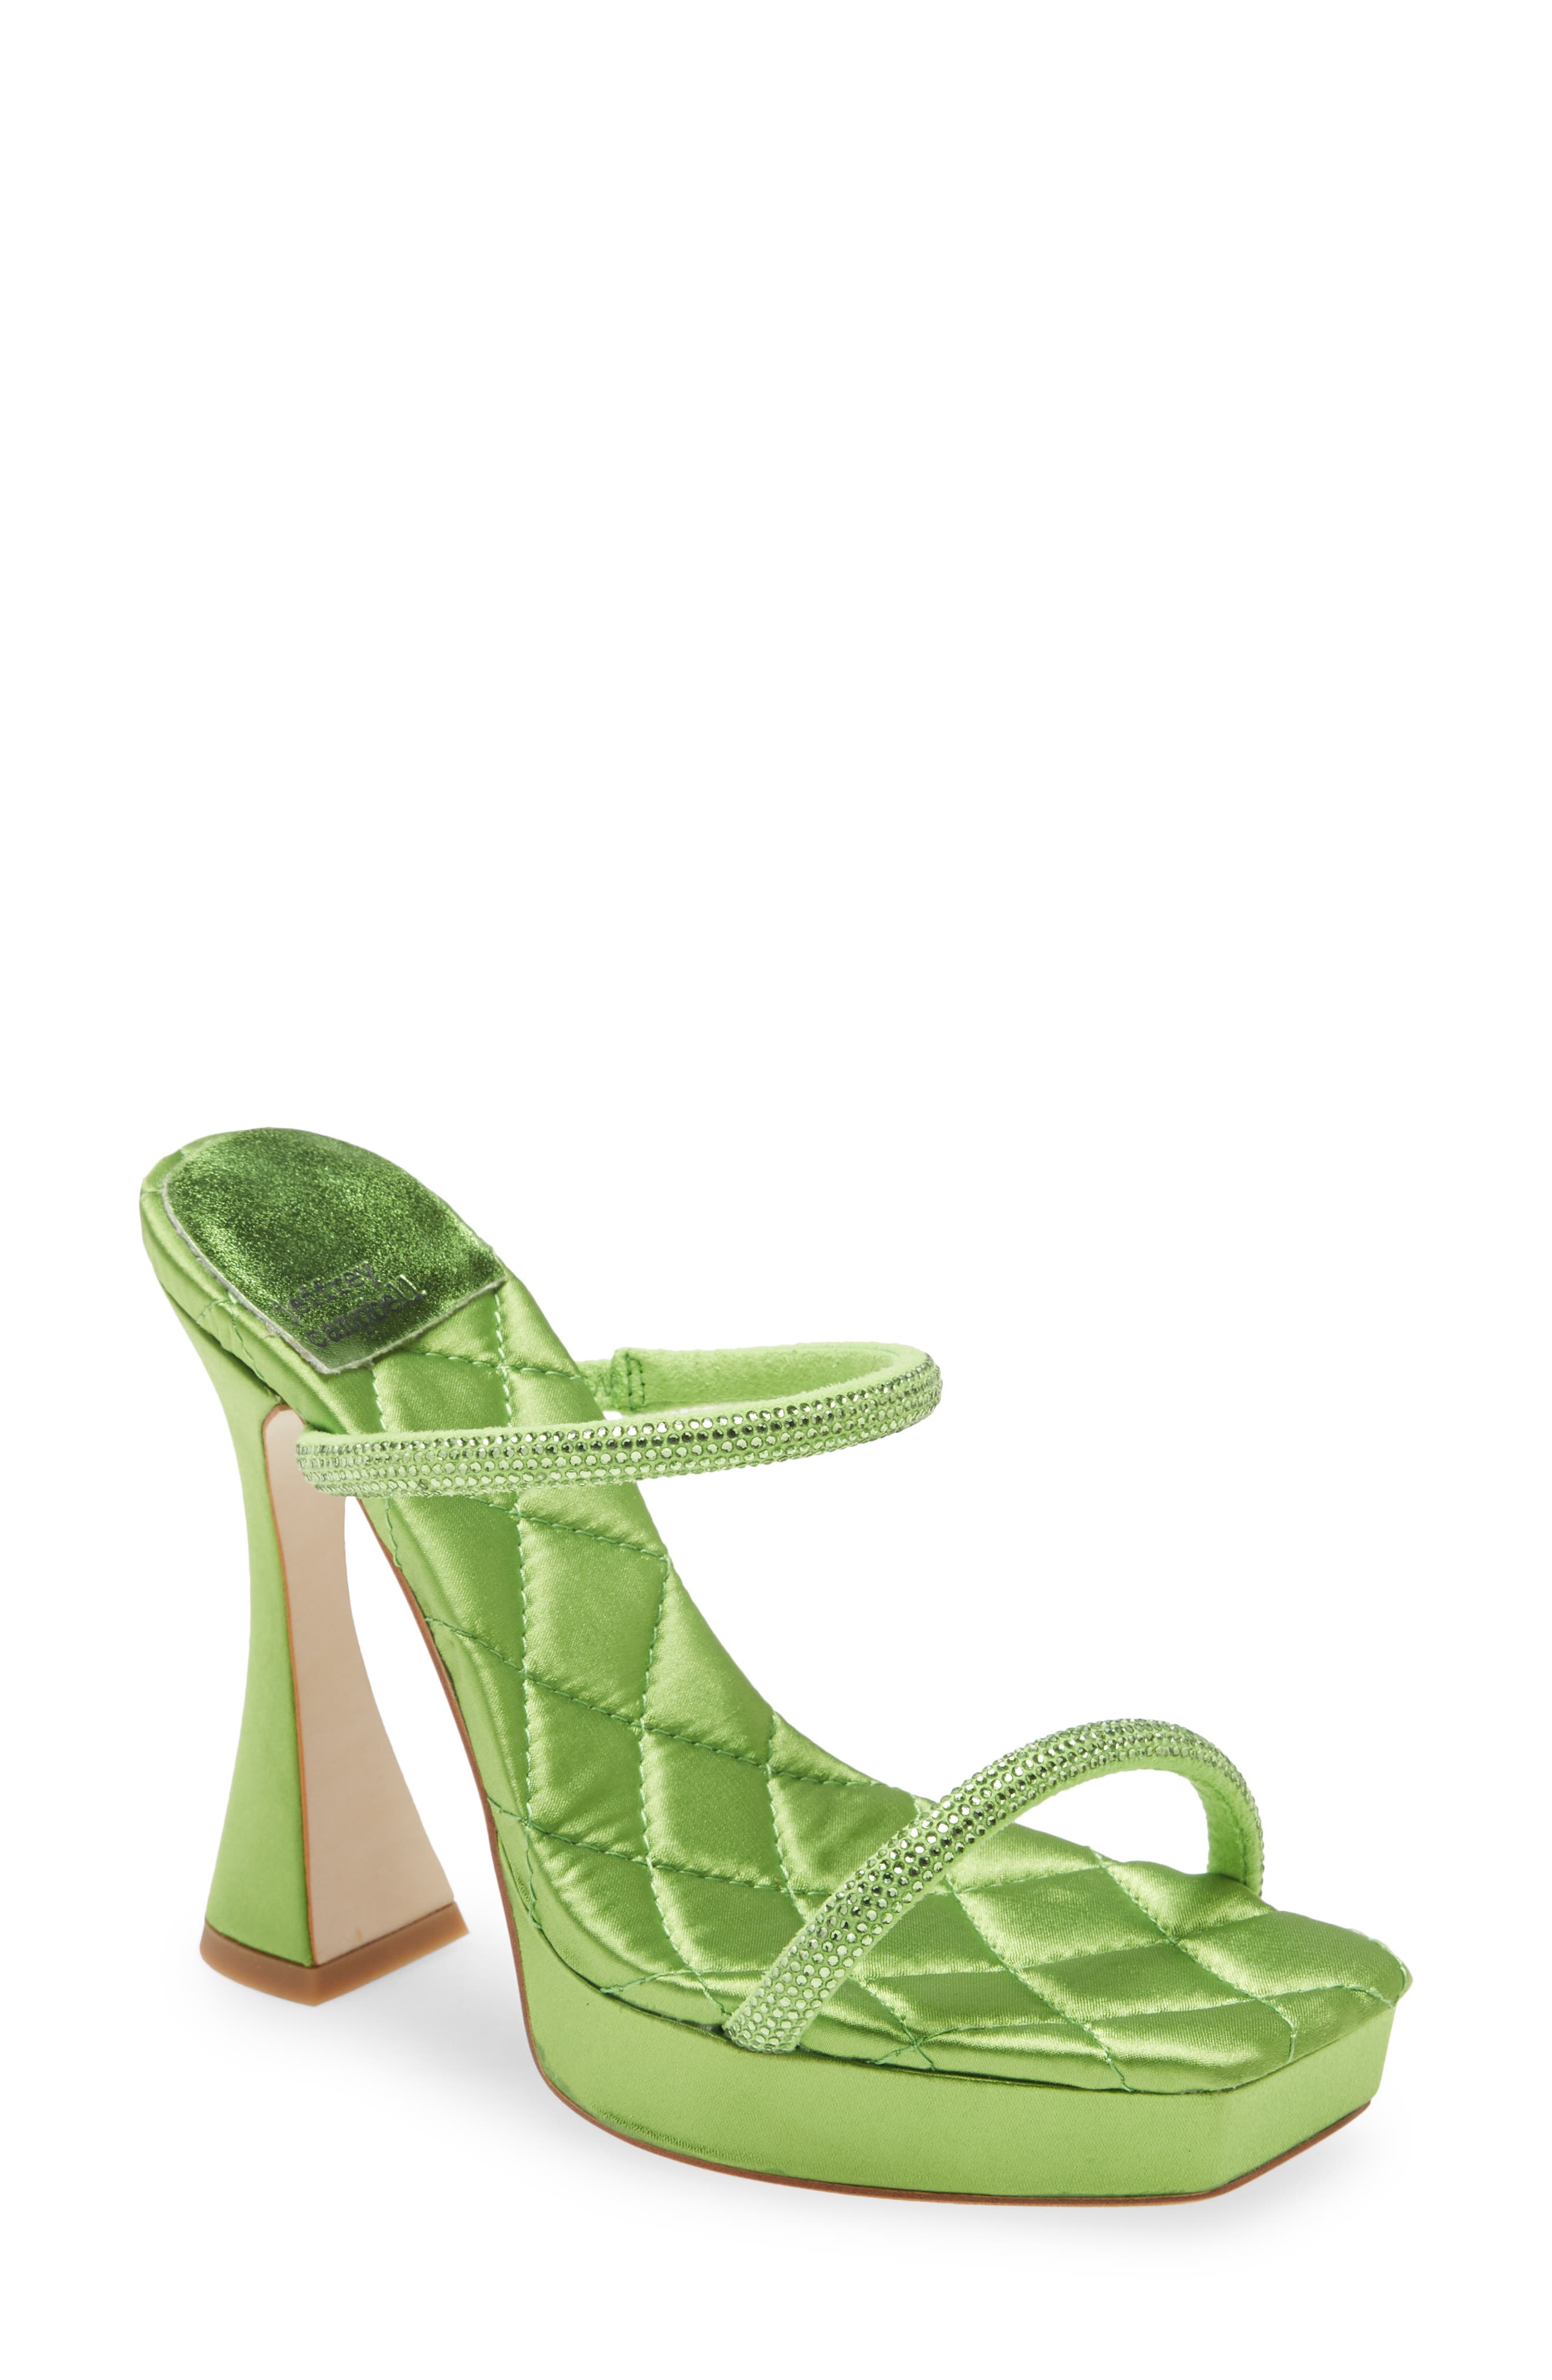 Buy > lime green sandals heels > in stock